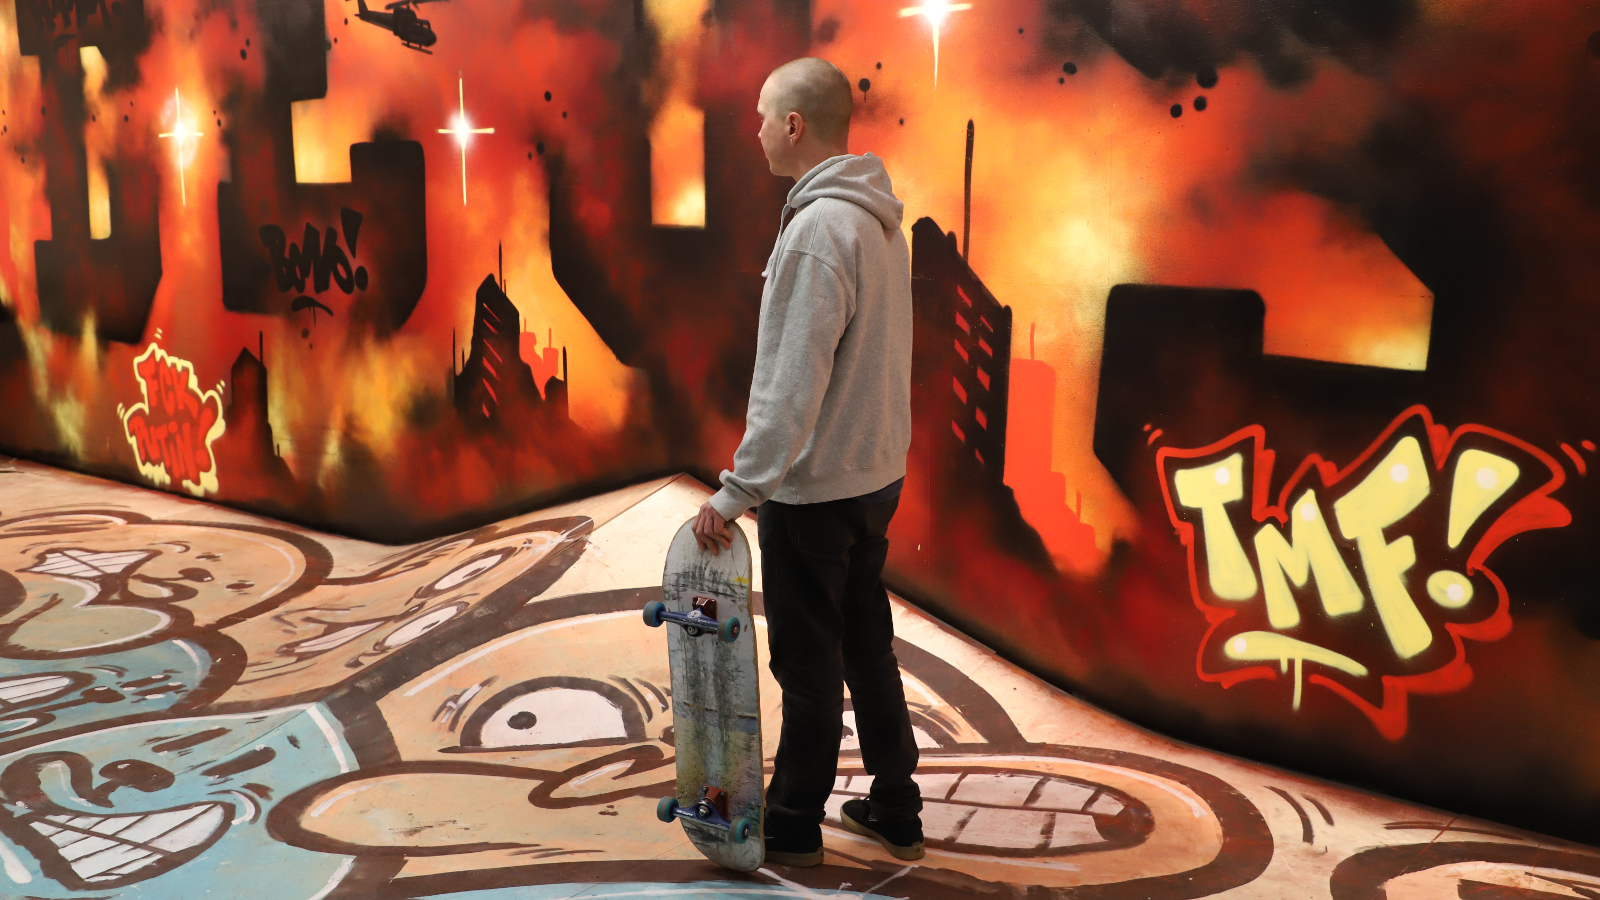 Kuvassa on aulatilassa värikkäitä graffitteja lattialla ja seinillä. Keskellä seisoo nuori mies skeittilauta kädessään. 